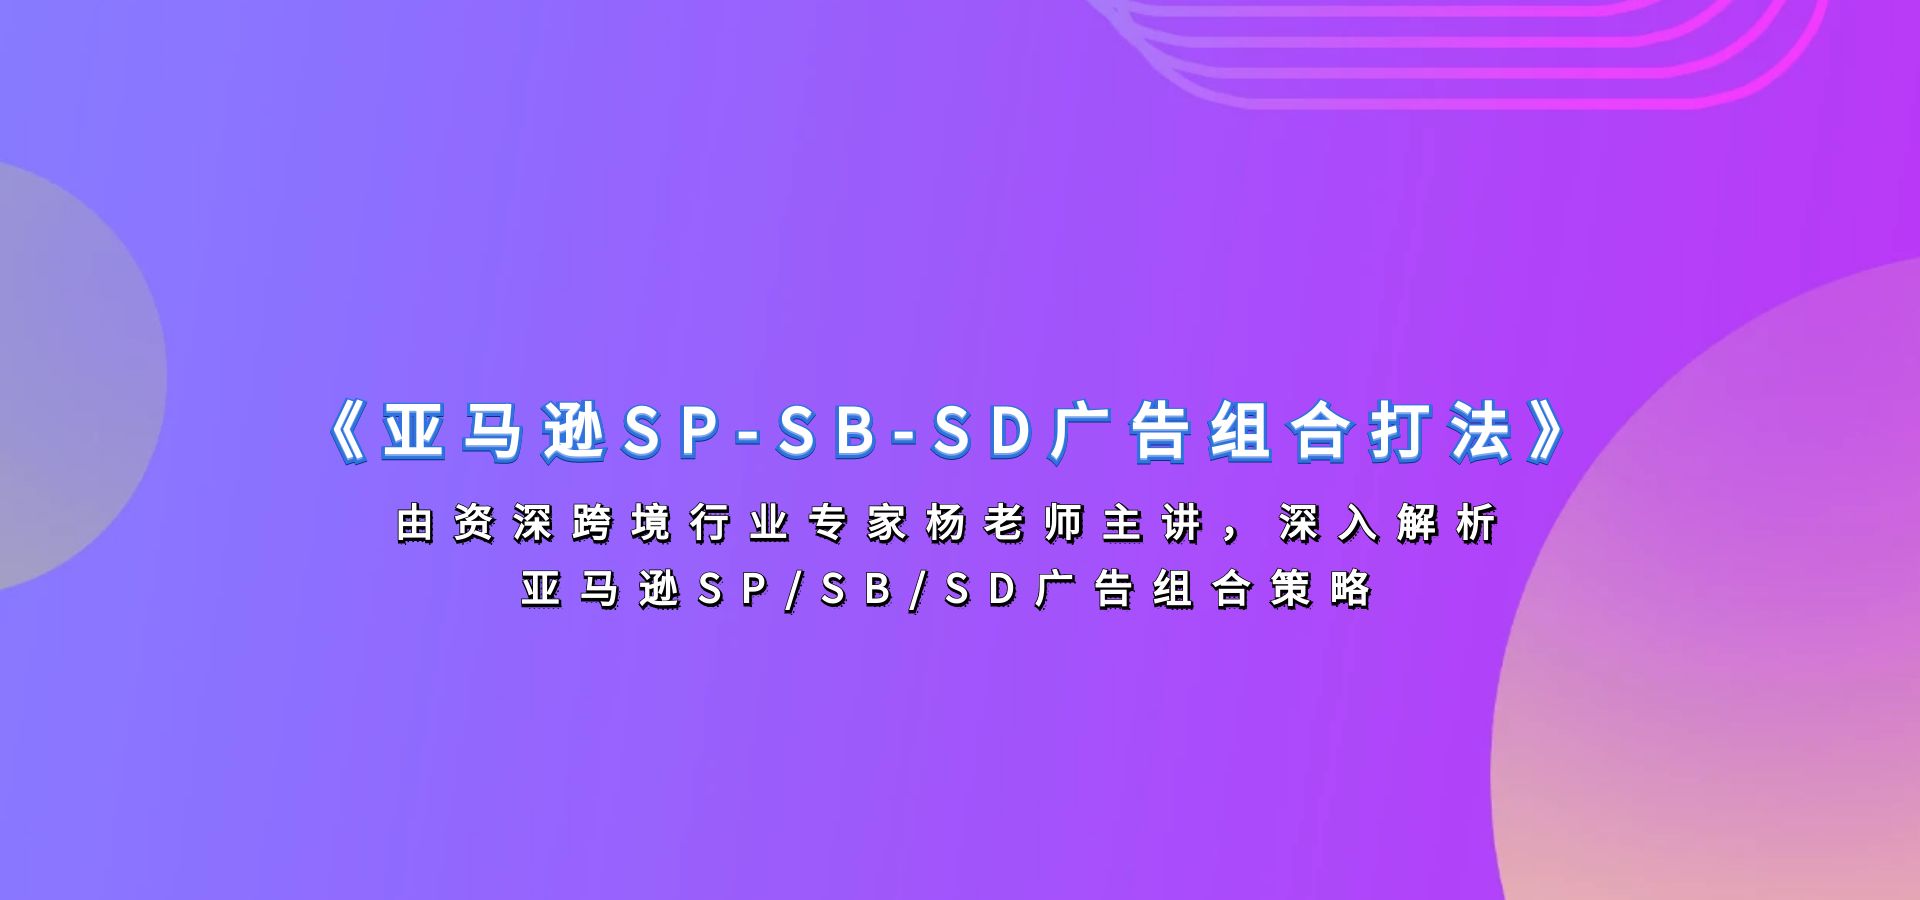 杨老师《亚马逊SP-SB-SD广告组合打法》